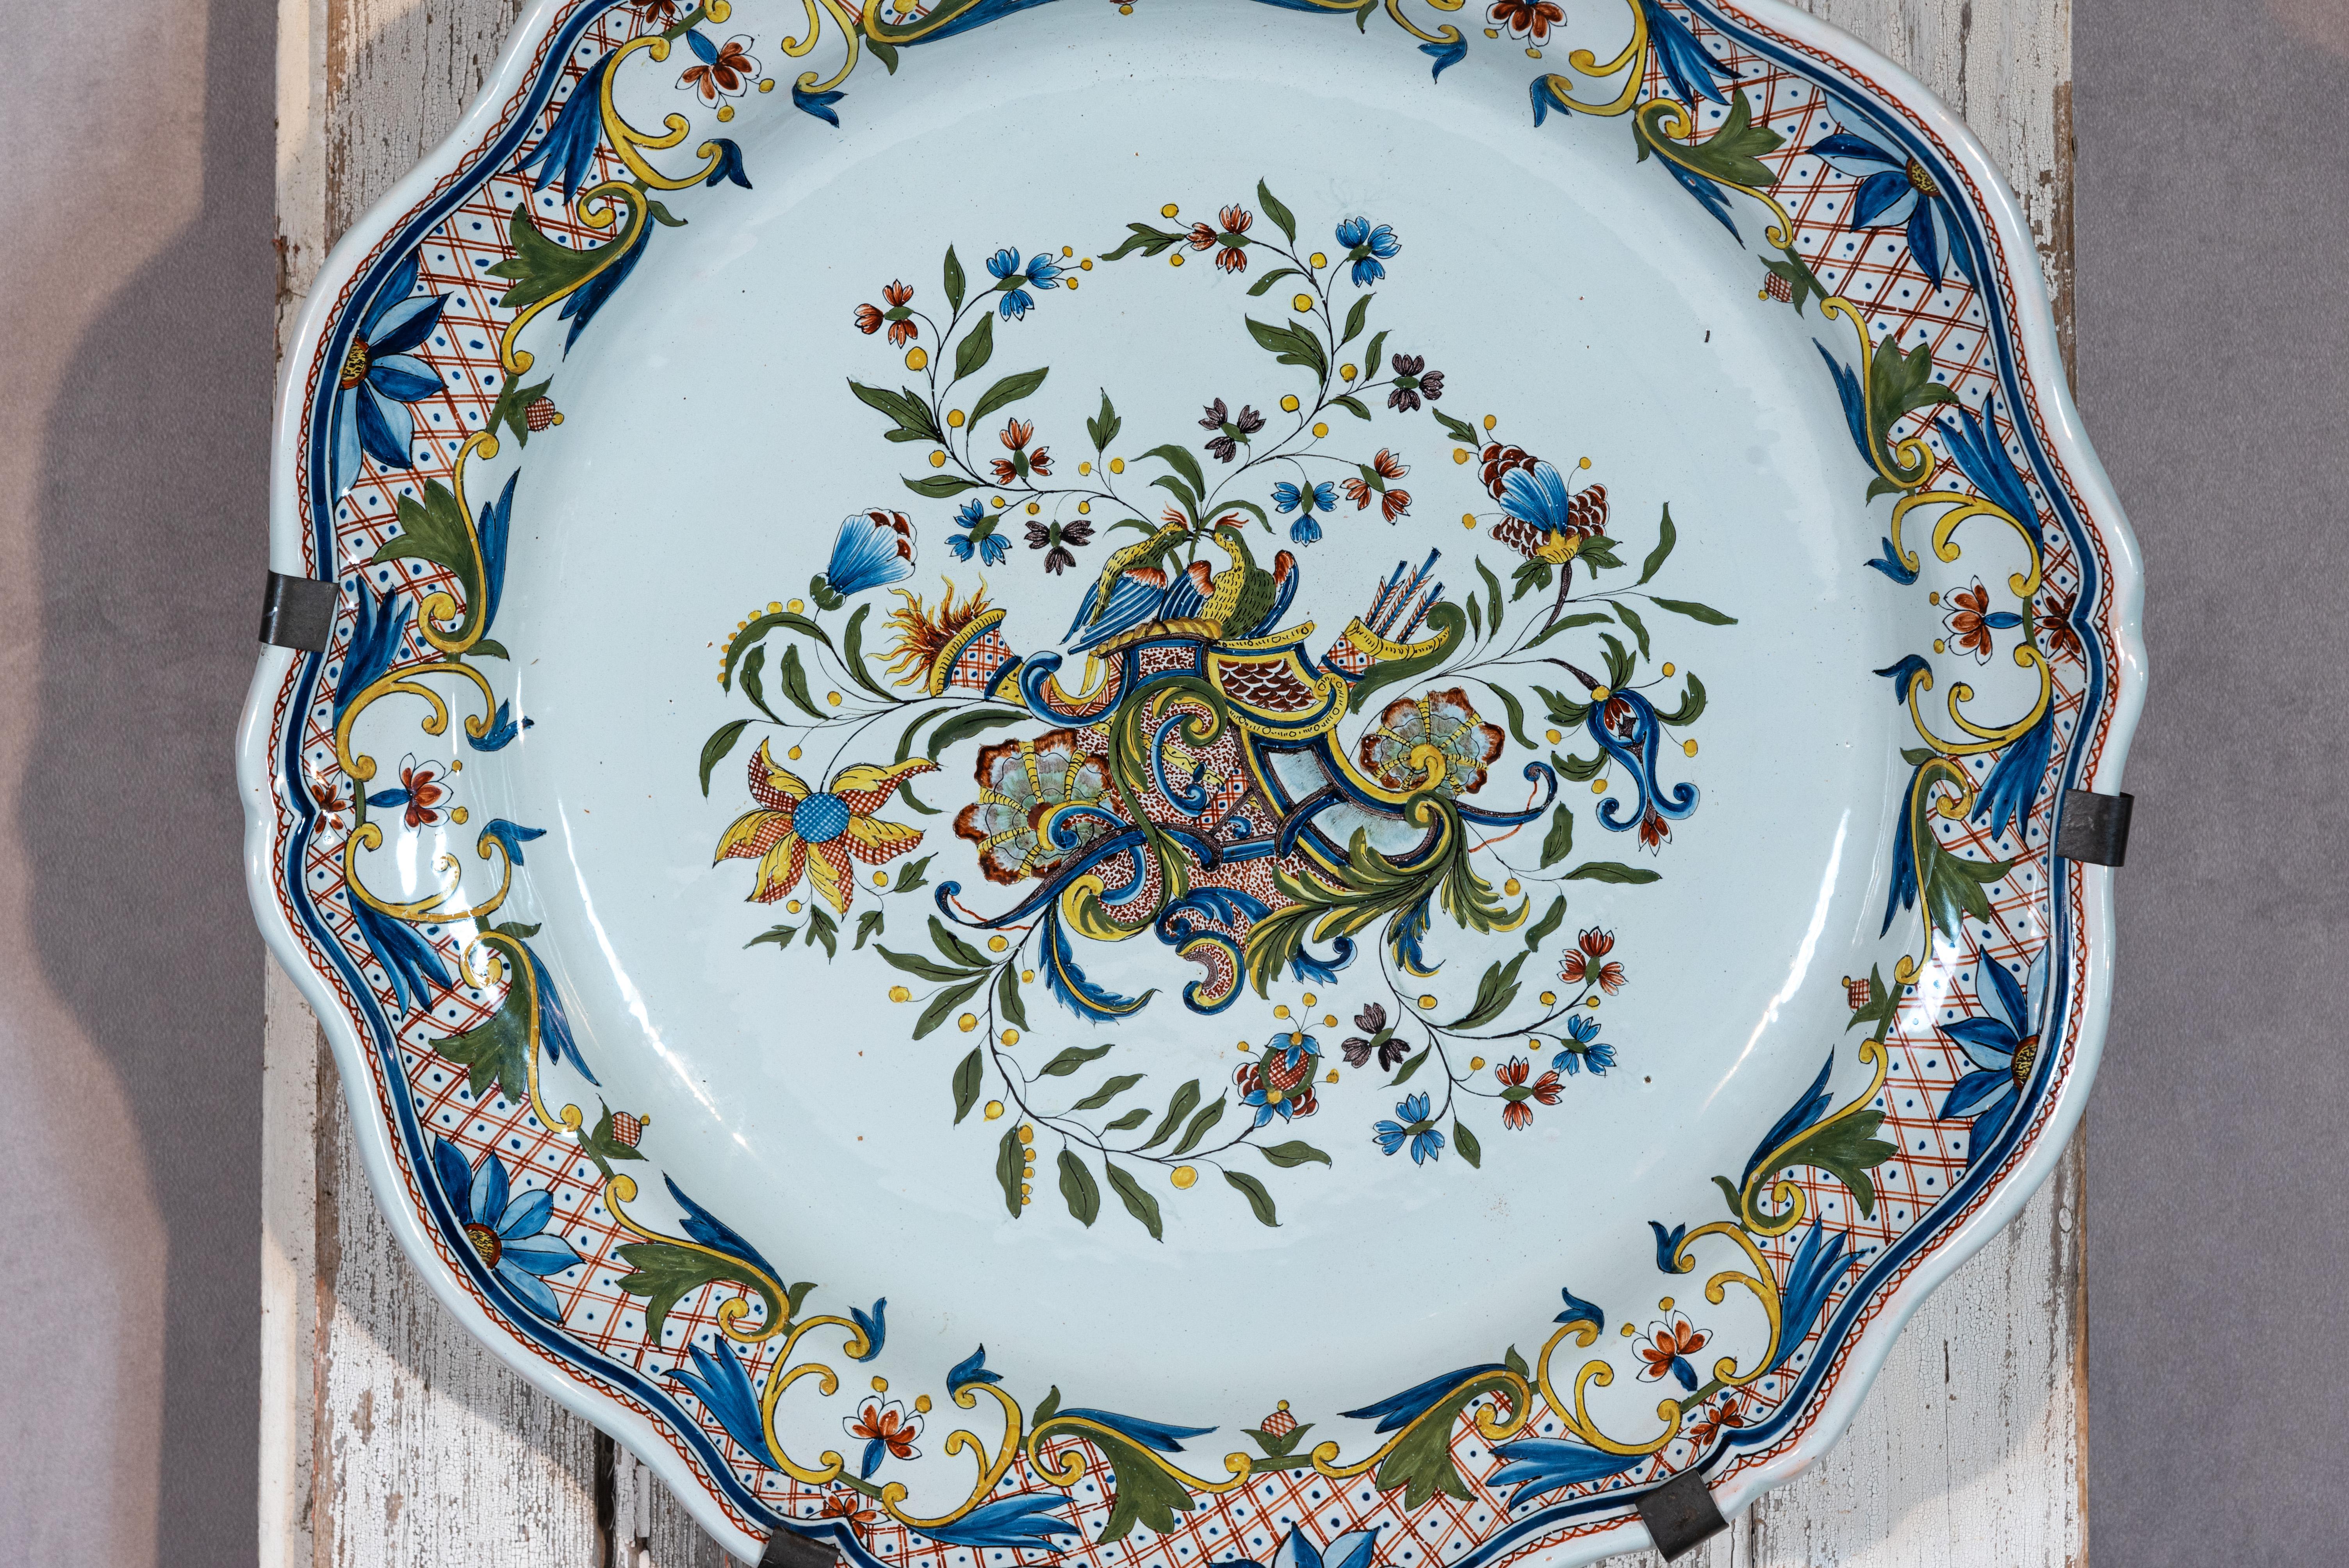 Bringen Sie einen Hauch von französischem Charme in Ihr Zuhause mit dieser schönen französischen Fayence-Quimper-Platte. Diese Platte mit ihren wunderschönen floralen Ornamenten im Inneren und um den Teller herum ist ein Beweis für die